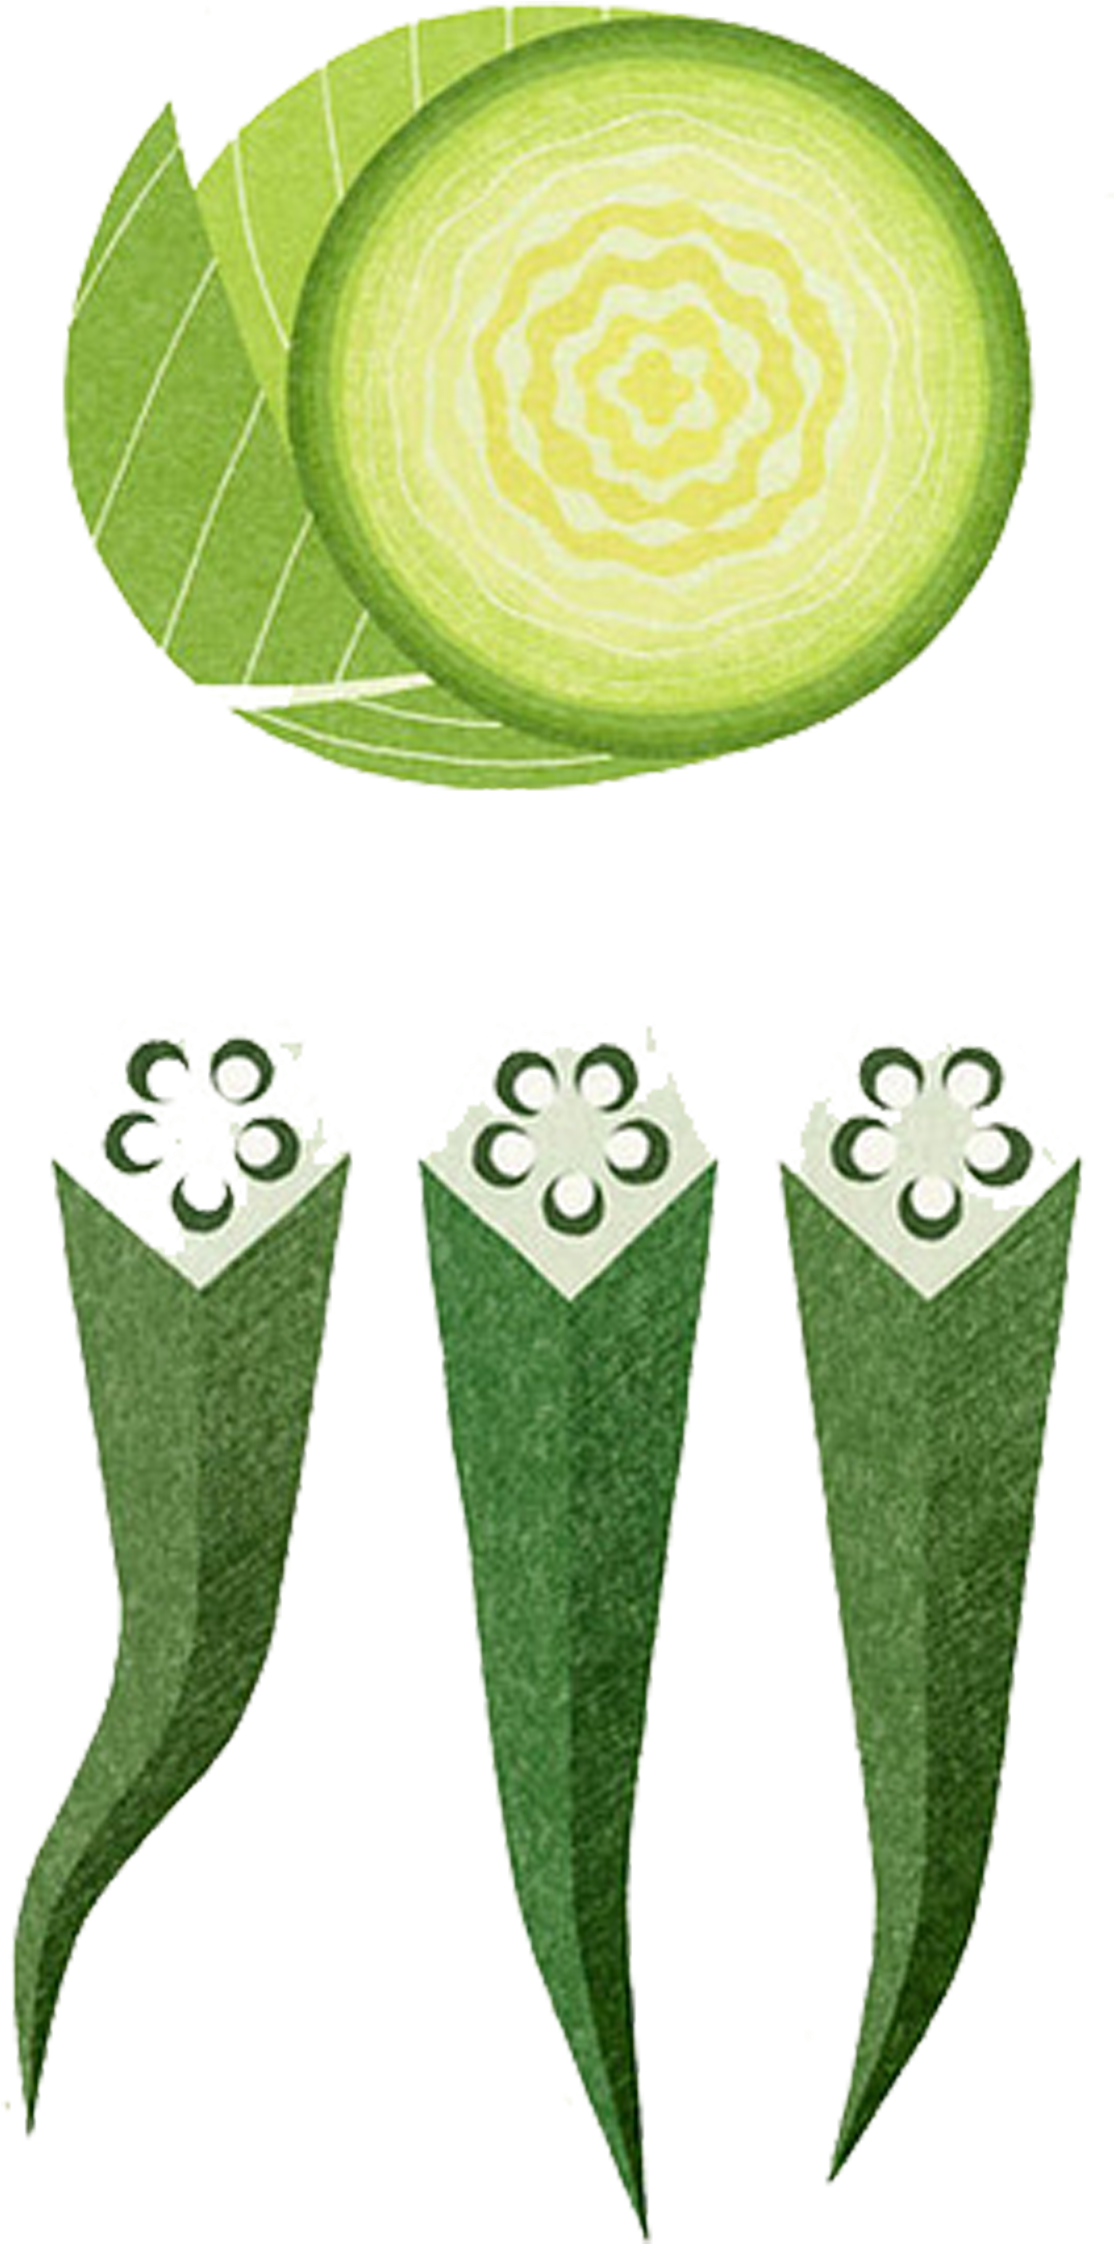 Okra Vegetable Painting Illustration - Illustration (1254x2325)